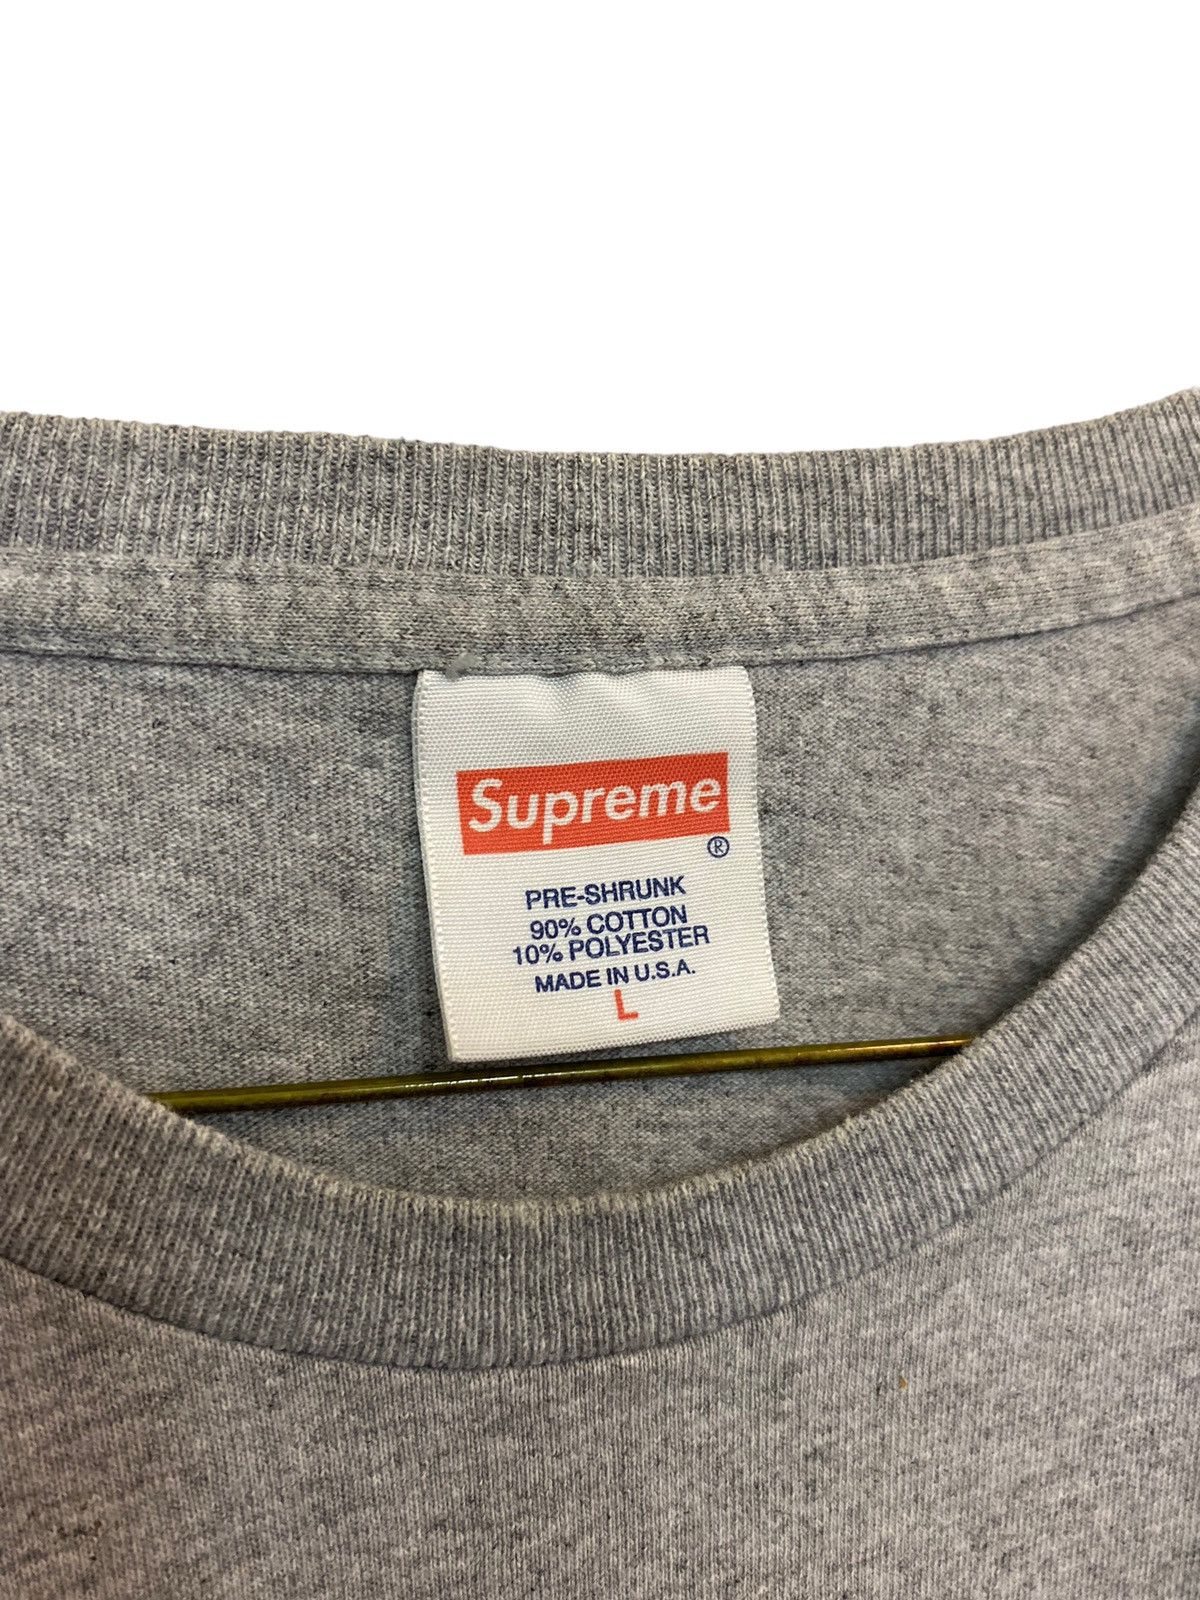 Supreme Supreme "Fuck What You Heard" Long Sleeve T Shirt F/W16 Size US L / EU 52-54 / 3 - 4 Thumbnail